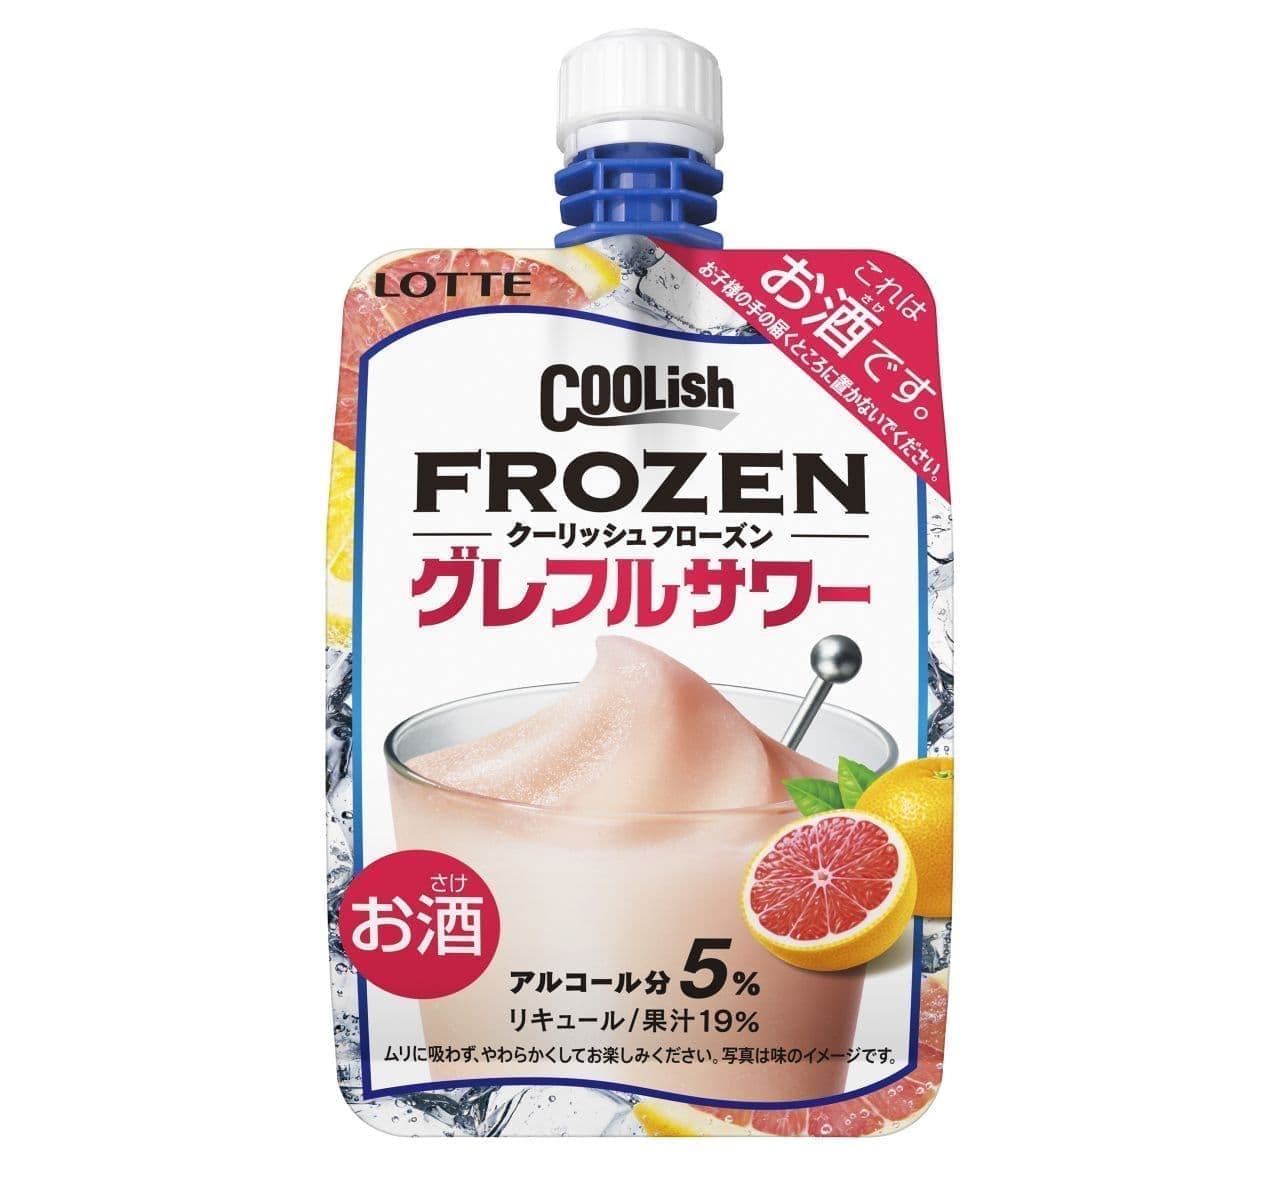 Lotte "Coolish Frozen Greffle Sour